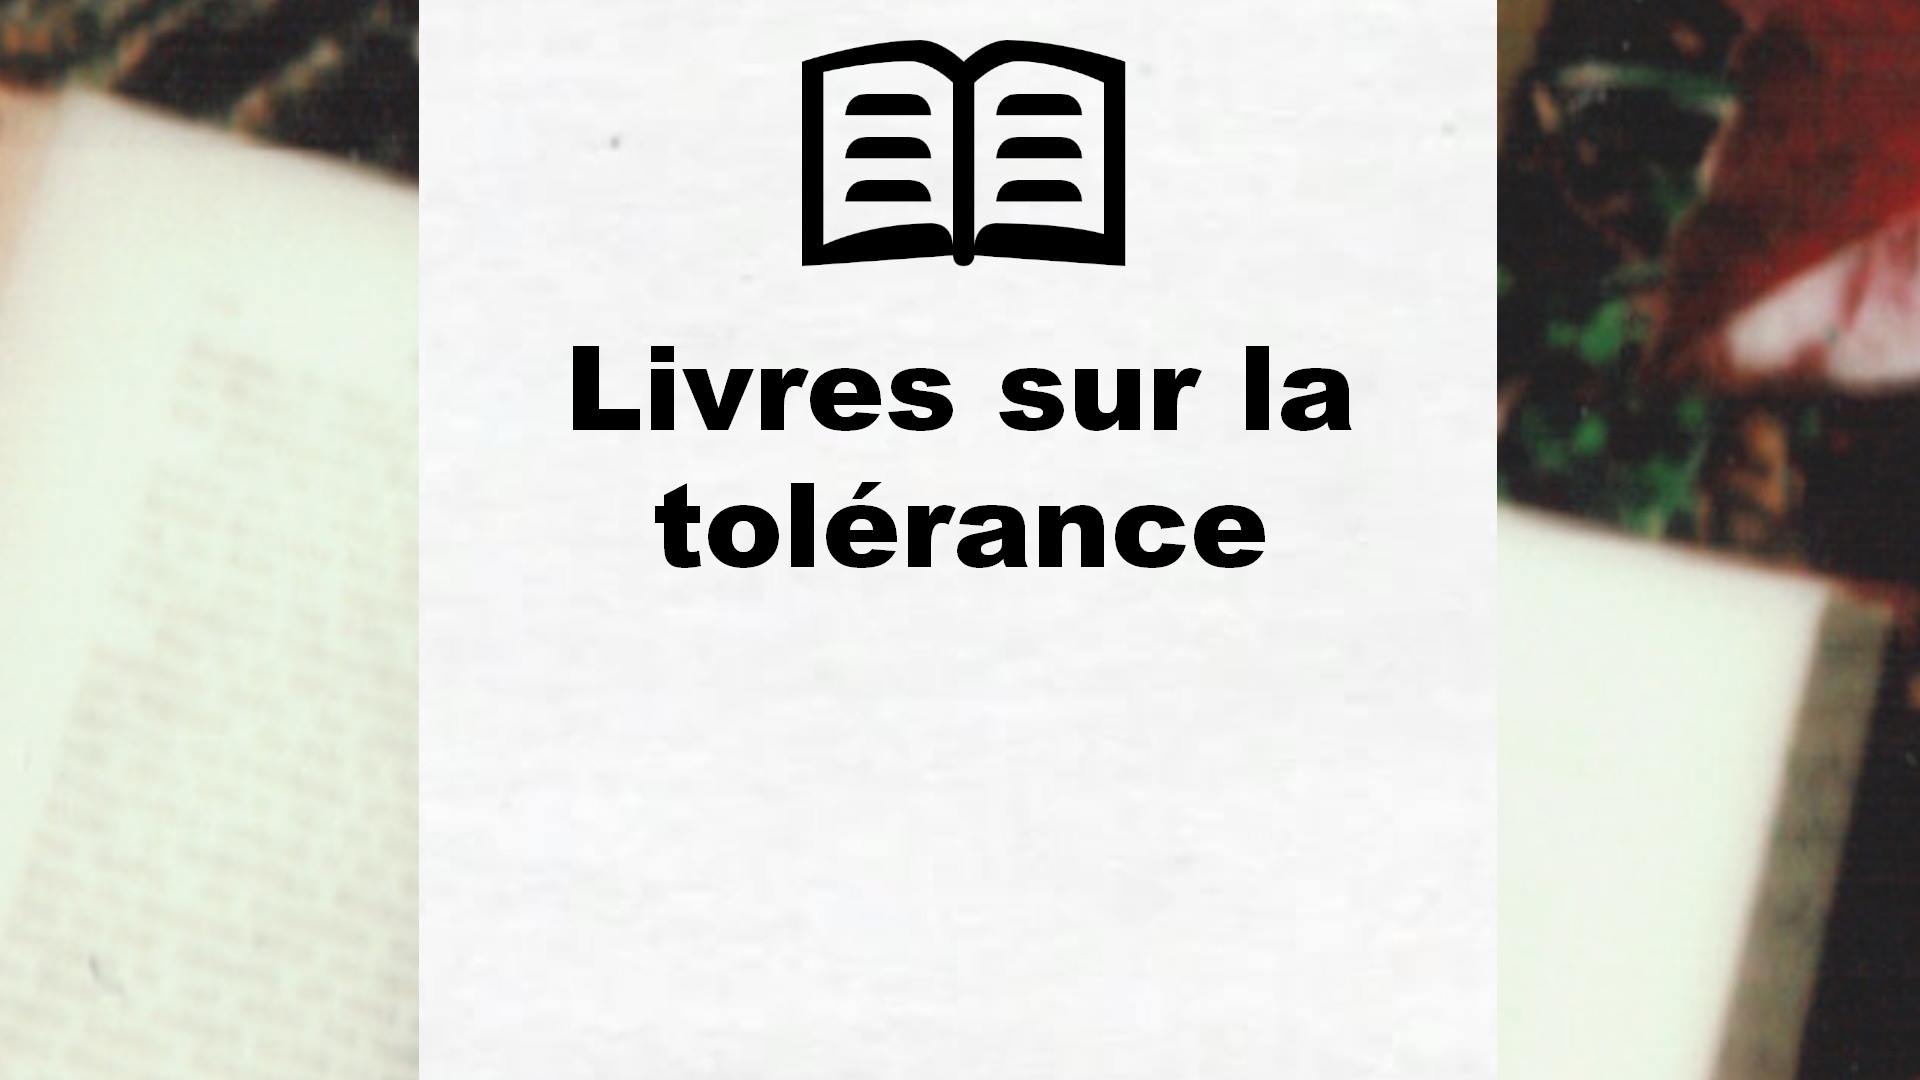 Livres sur la tolérance